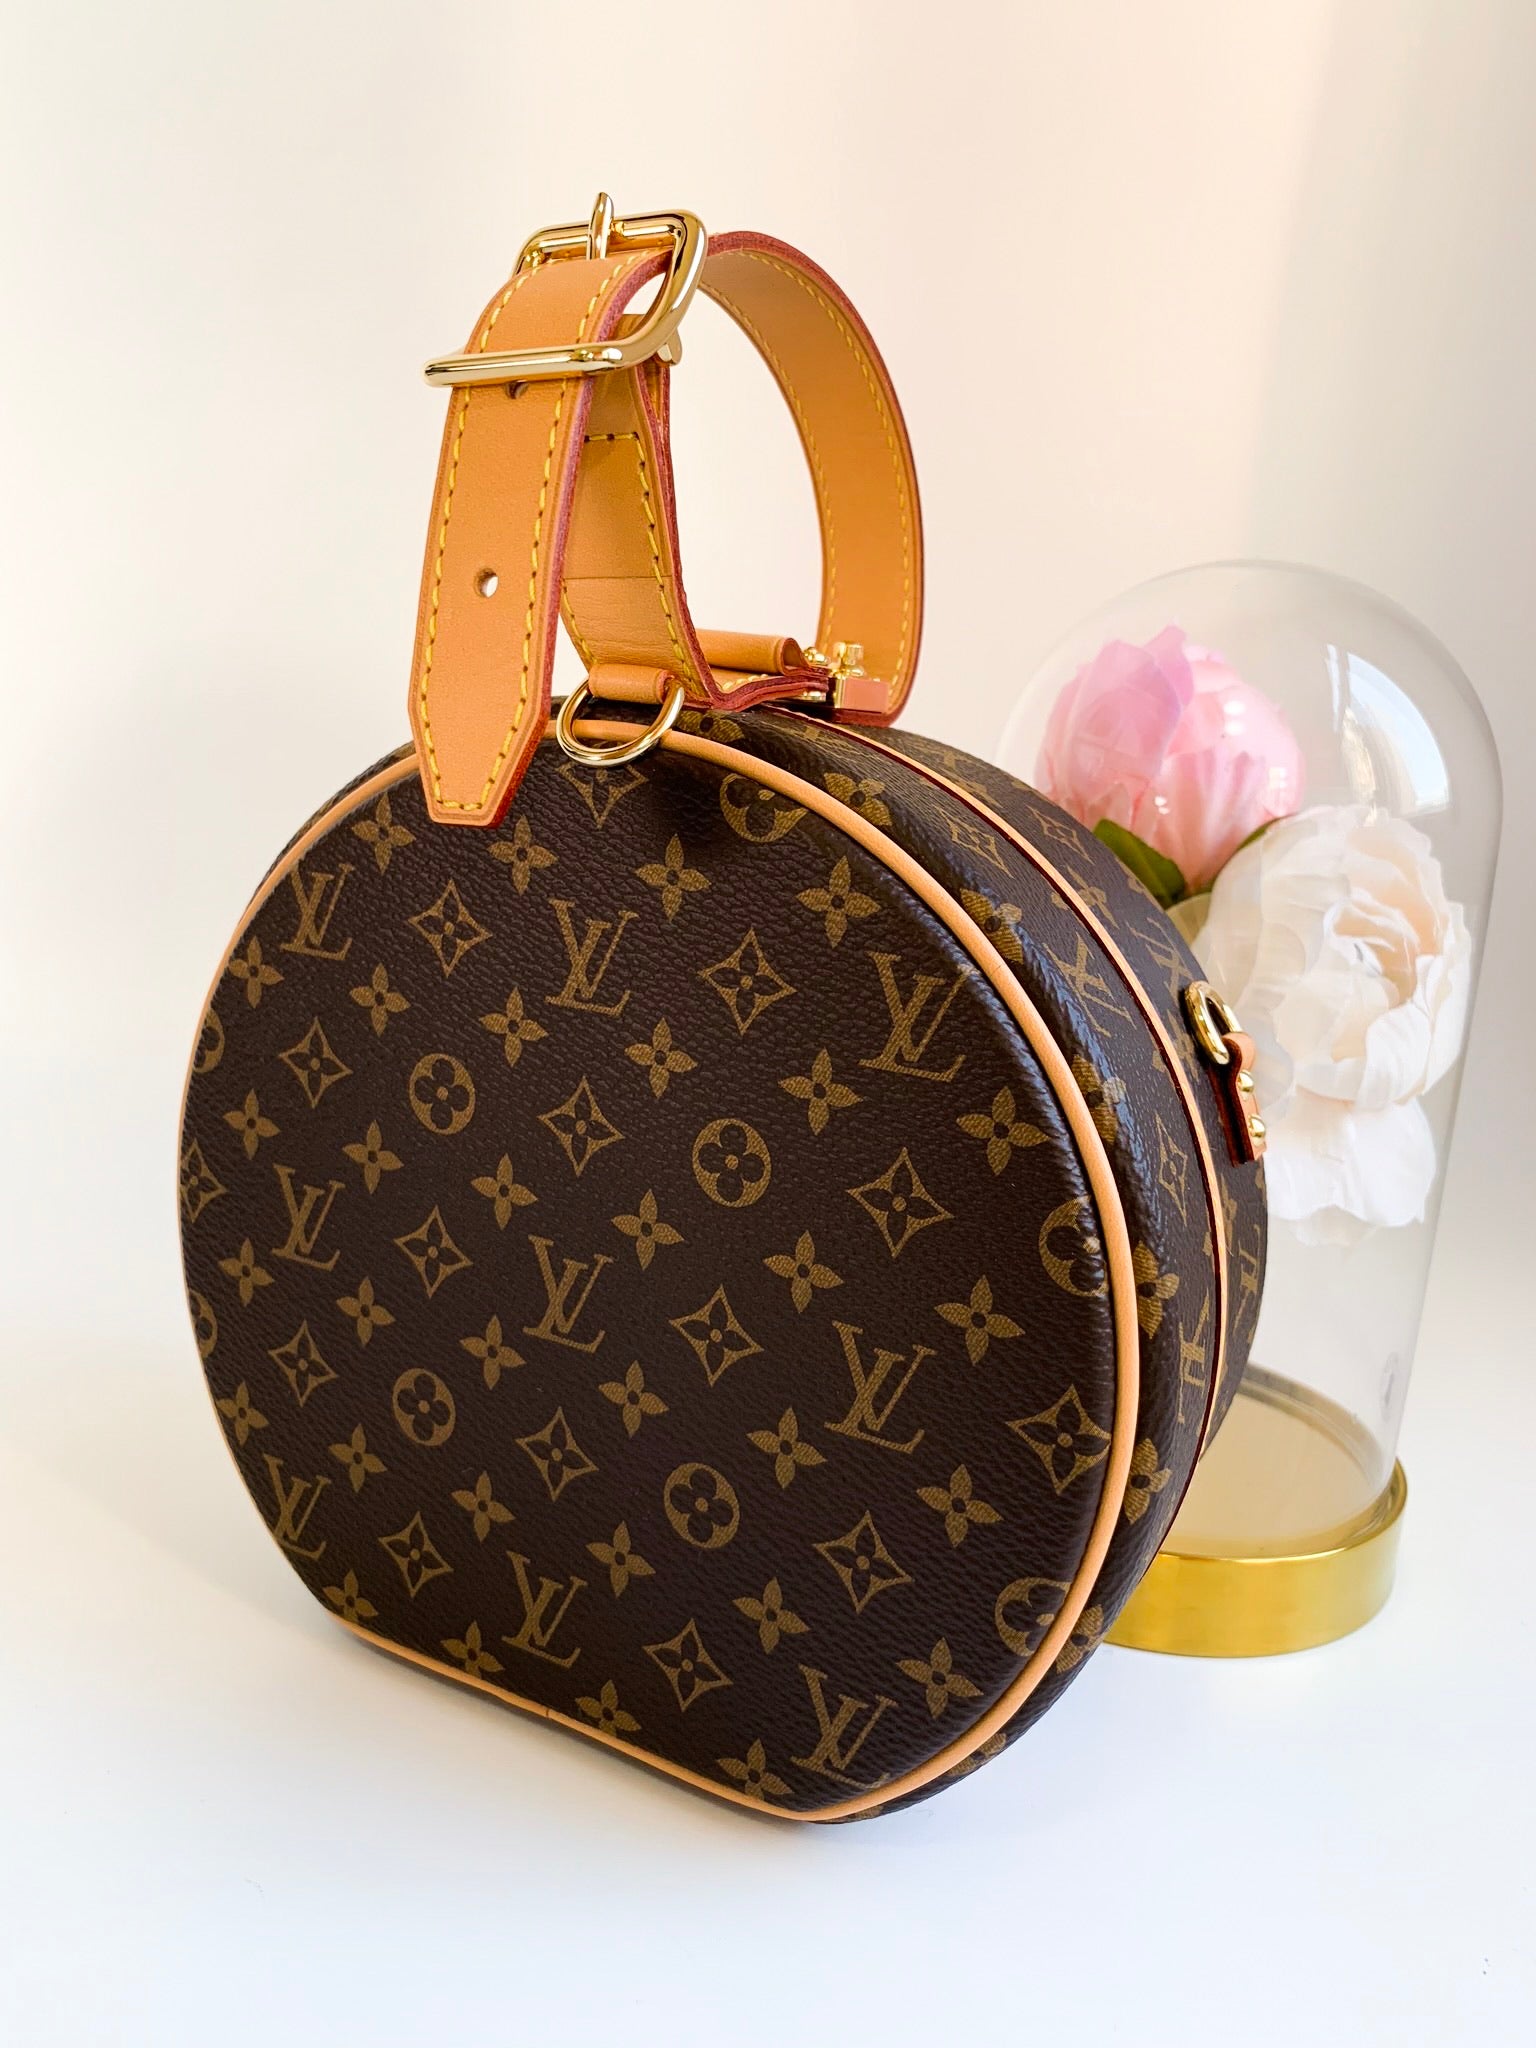 Freebies & Deals - AUTH NEW Louis Vuitton PETITE BOITE CHAPEAU Hat Box bag,  W/LV GIFT BOX, DUSTBAG!  #100authentic # louisvuitton